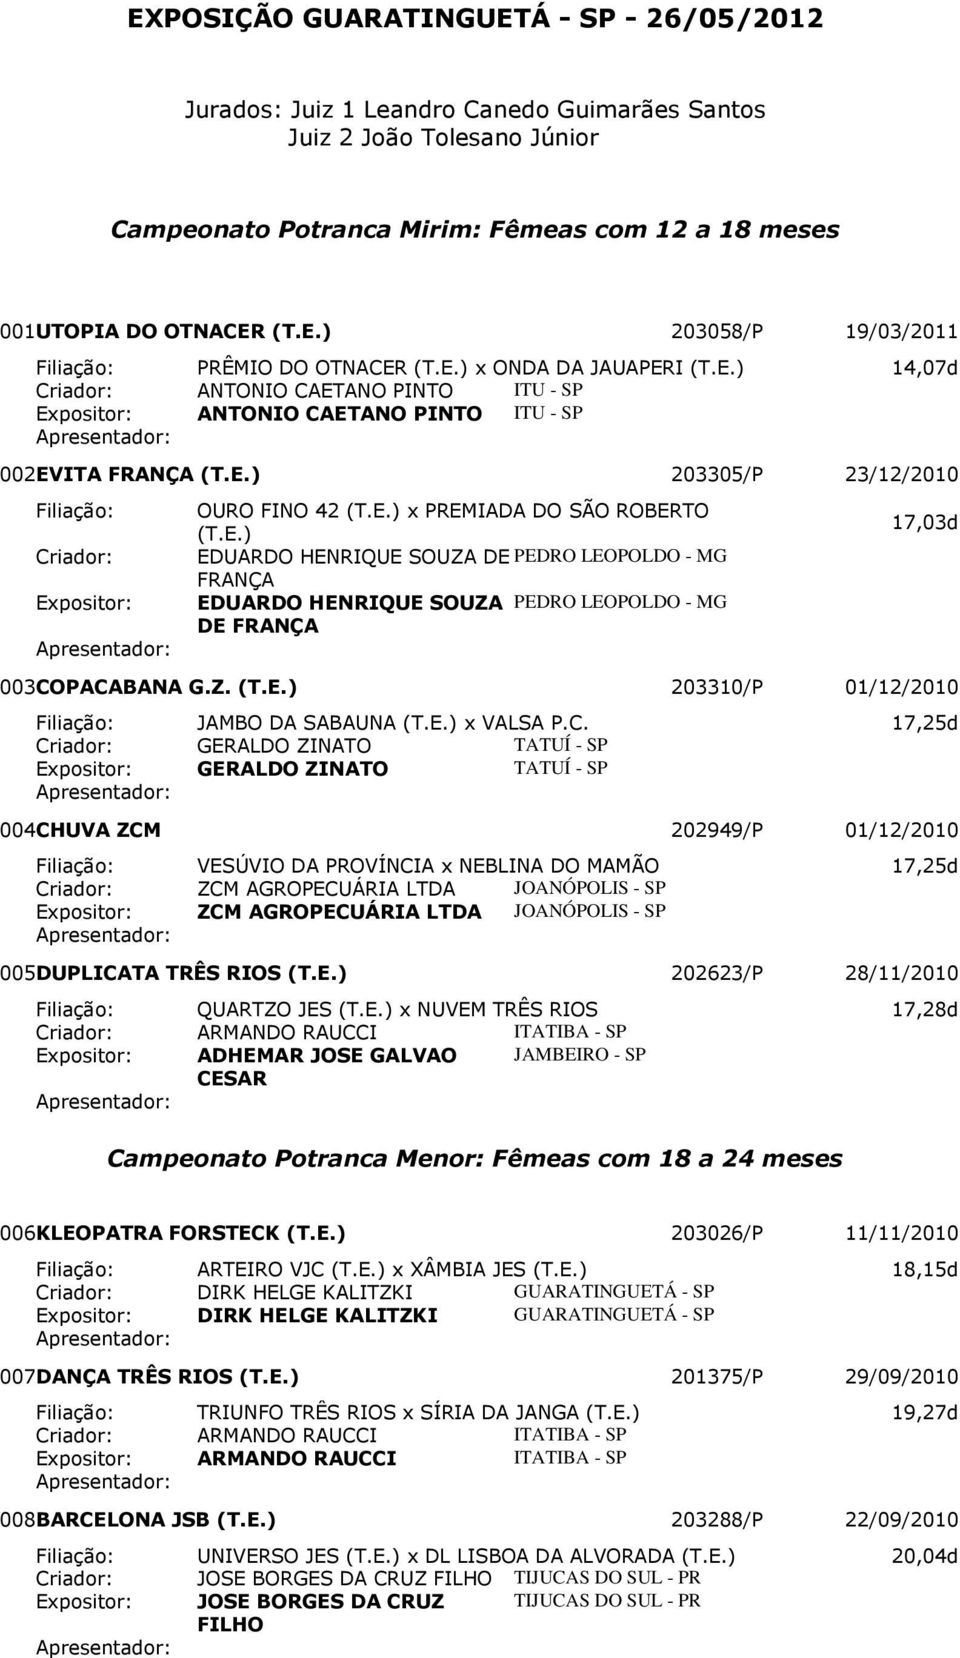 PREMIADA DO SÃO ROBERTO 17,03d EDUARDO HENRIQUE SOUZA DE PEDRO LEOPOLDO - MG FRANÇA EDUARDO HENRIQUE SOUZA PEDRO LEOPOLDO - MG DE FRANÇA 003 COPACABANA G.Z. 203310/P 01/12/2010 Filiação: JAMBO DA SABAUNA x VALSA P.